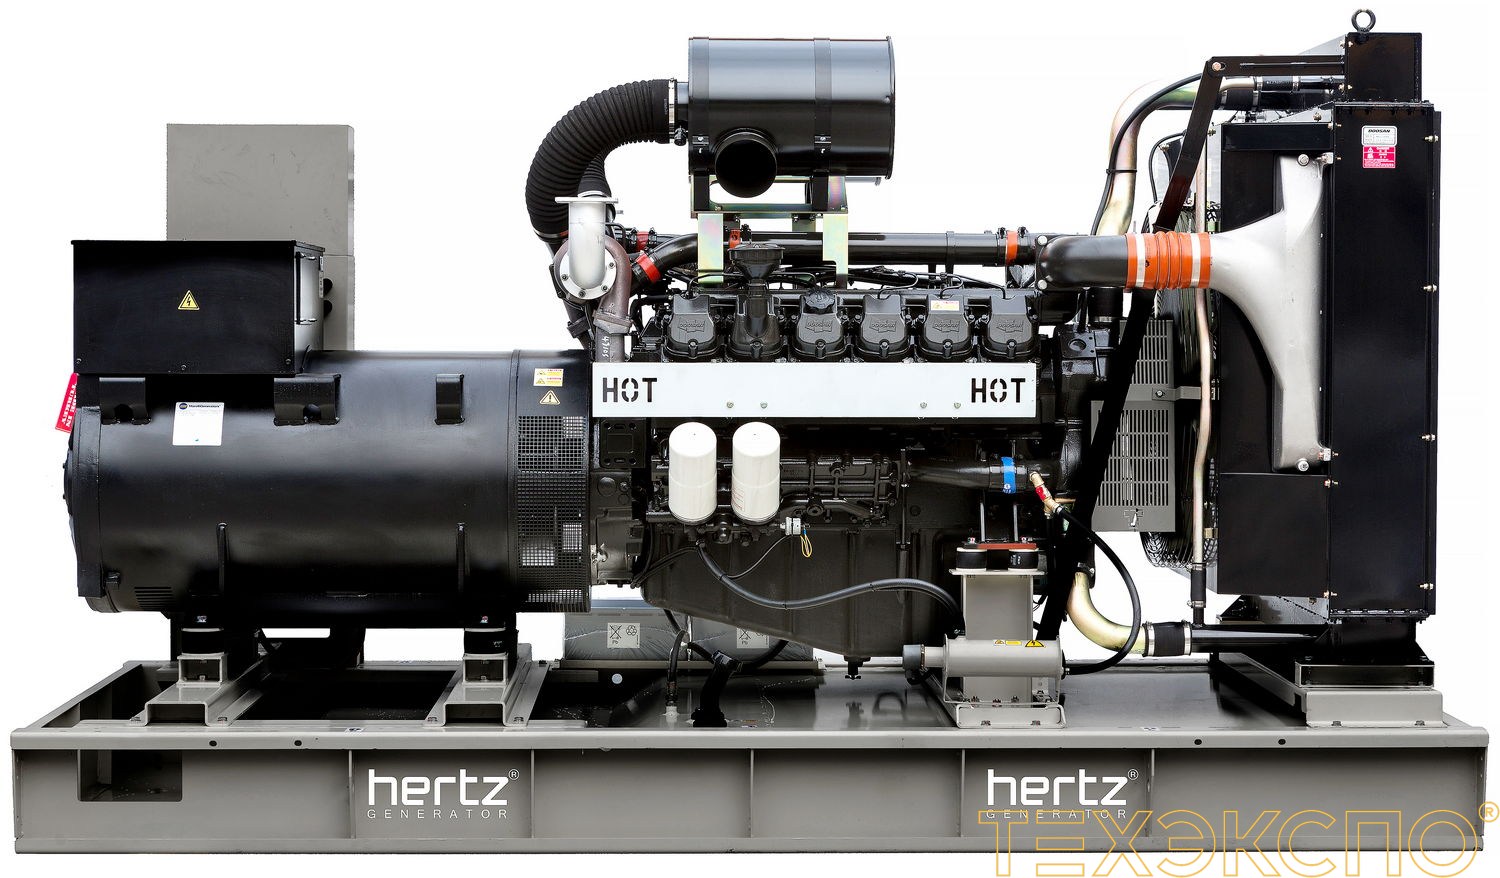 HERTZ HG850DC - ДЭС 600 кВт в Санкт-Петербурге за 14 362 192 рублей | Дизельная электростанция в Техэкспо